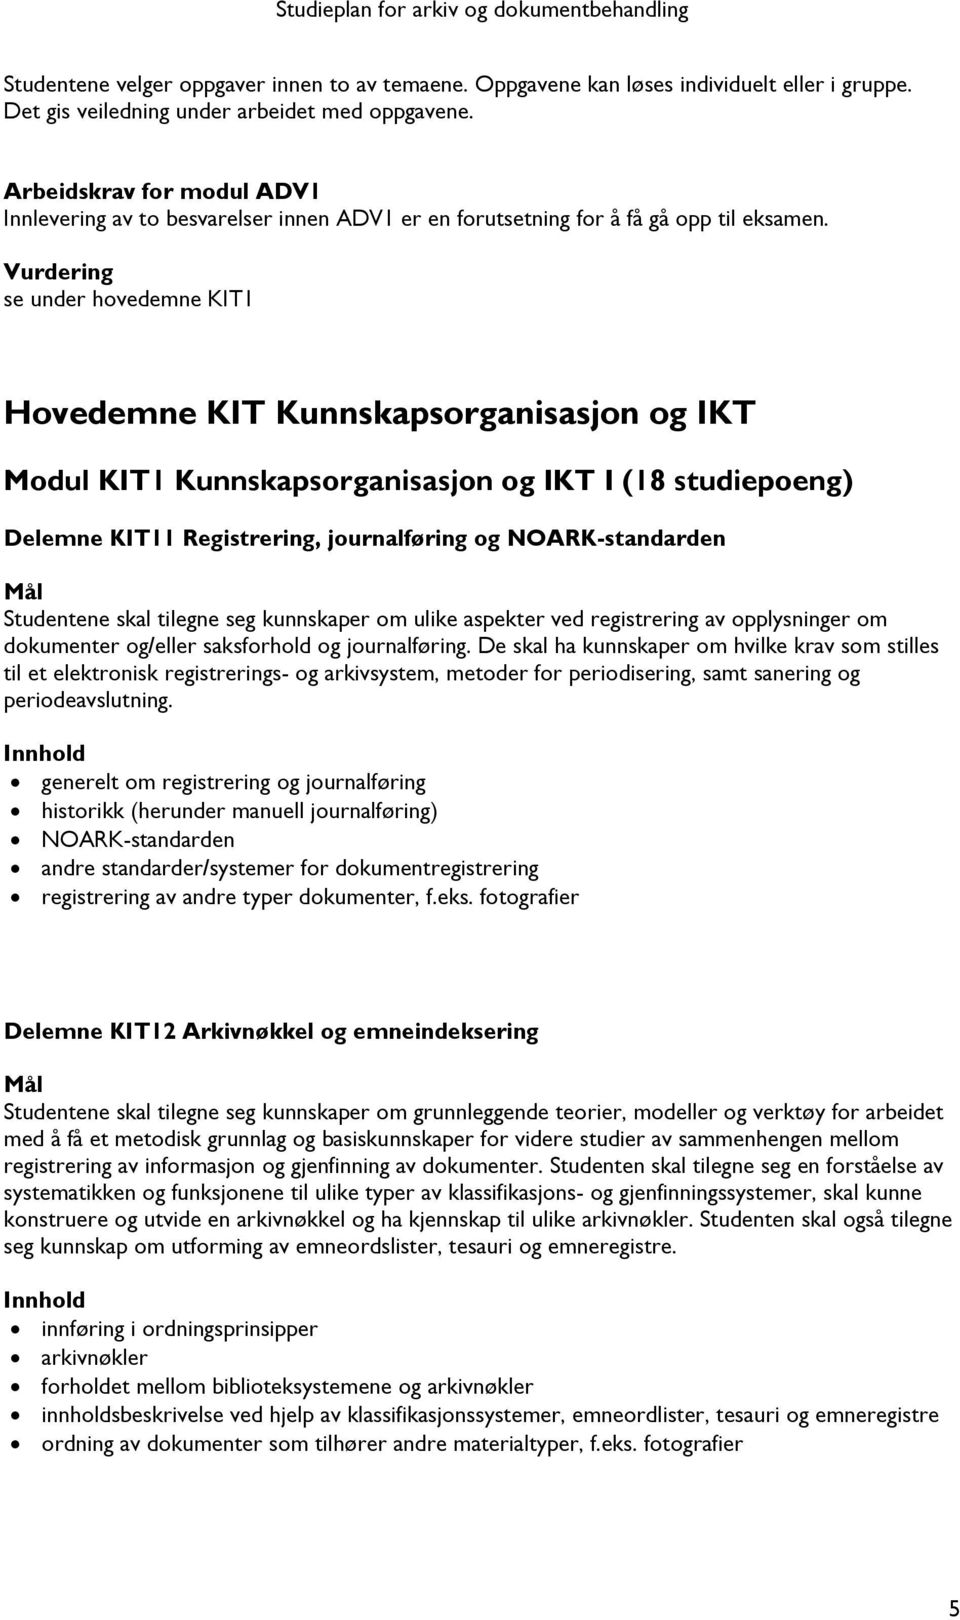 Vurdering se under hovedemne KIT1 Hovedemne KIT Kunnskapsorganisasjon og IKT Modul KIT1 Kunnskapsorganisasjon og IKT I (18 studiepoeng) Delemne KIT11 Registrering, journalføring og NOARK-standarden